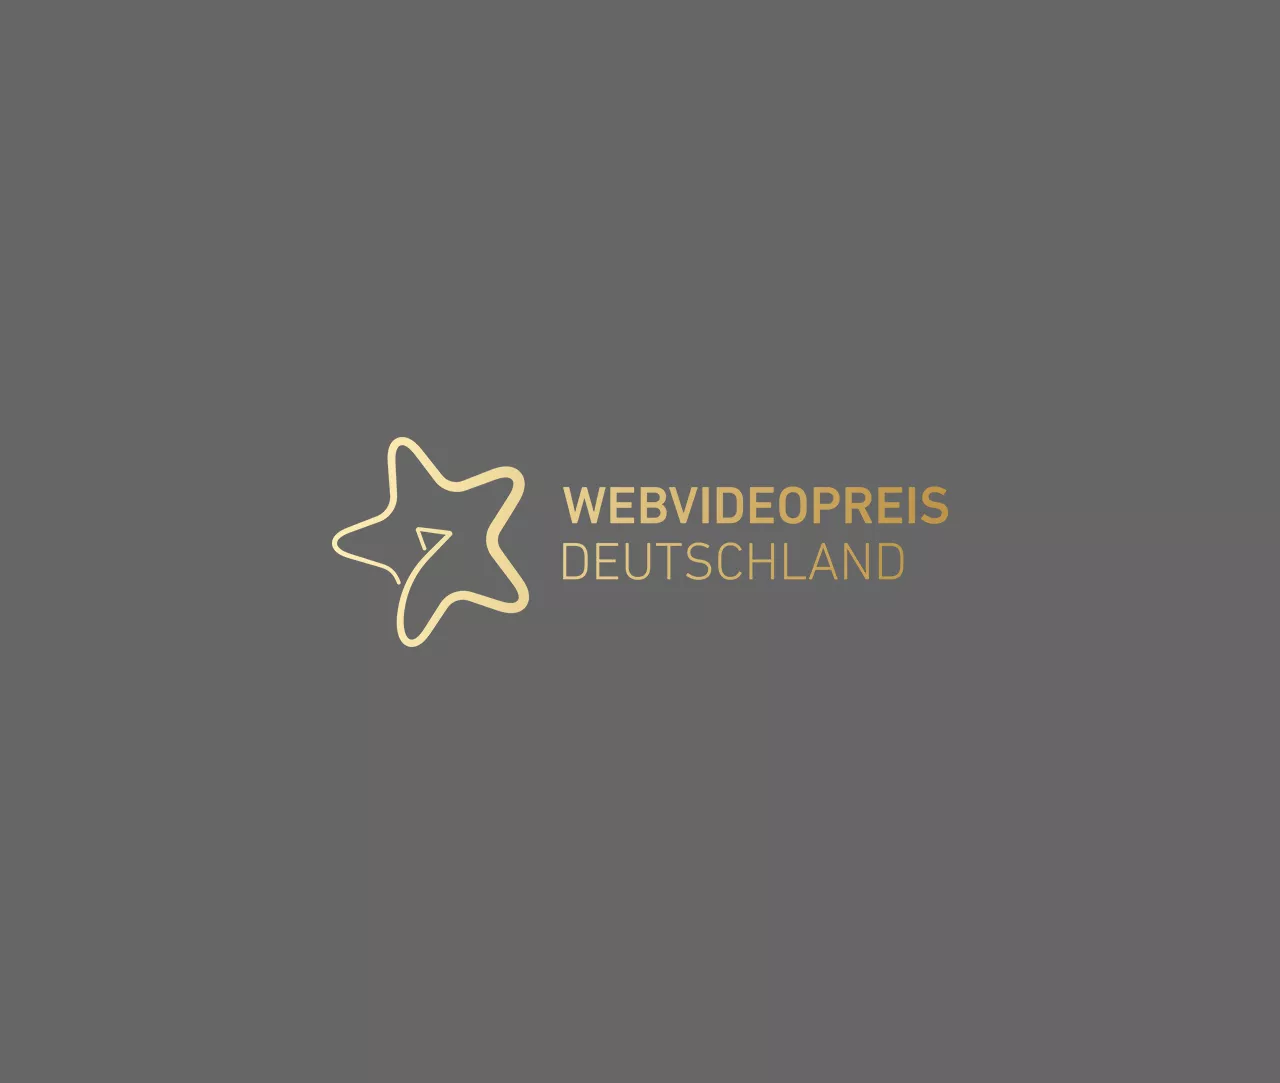 Webvideopreis Deutschland award on grey background